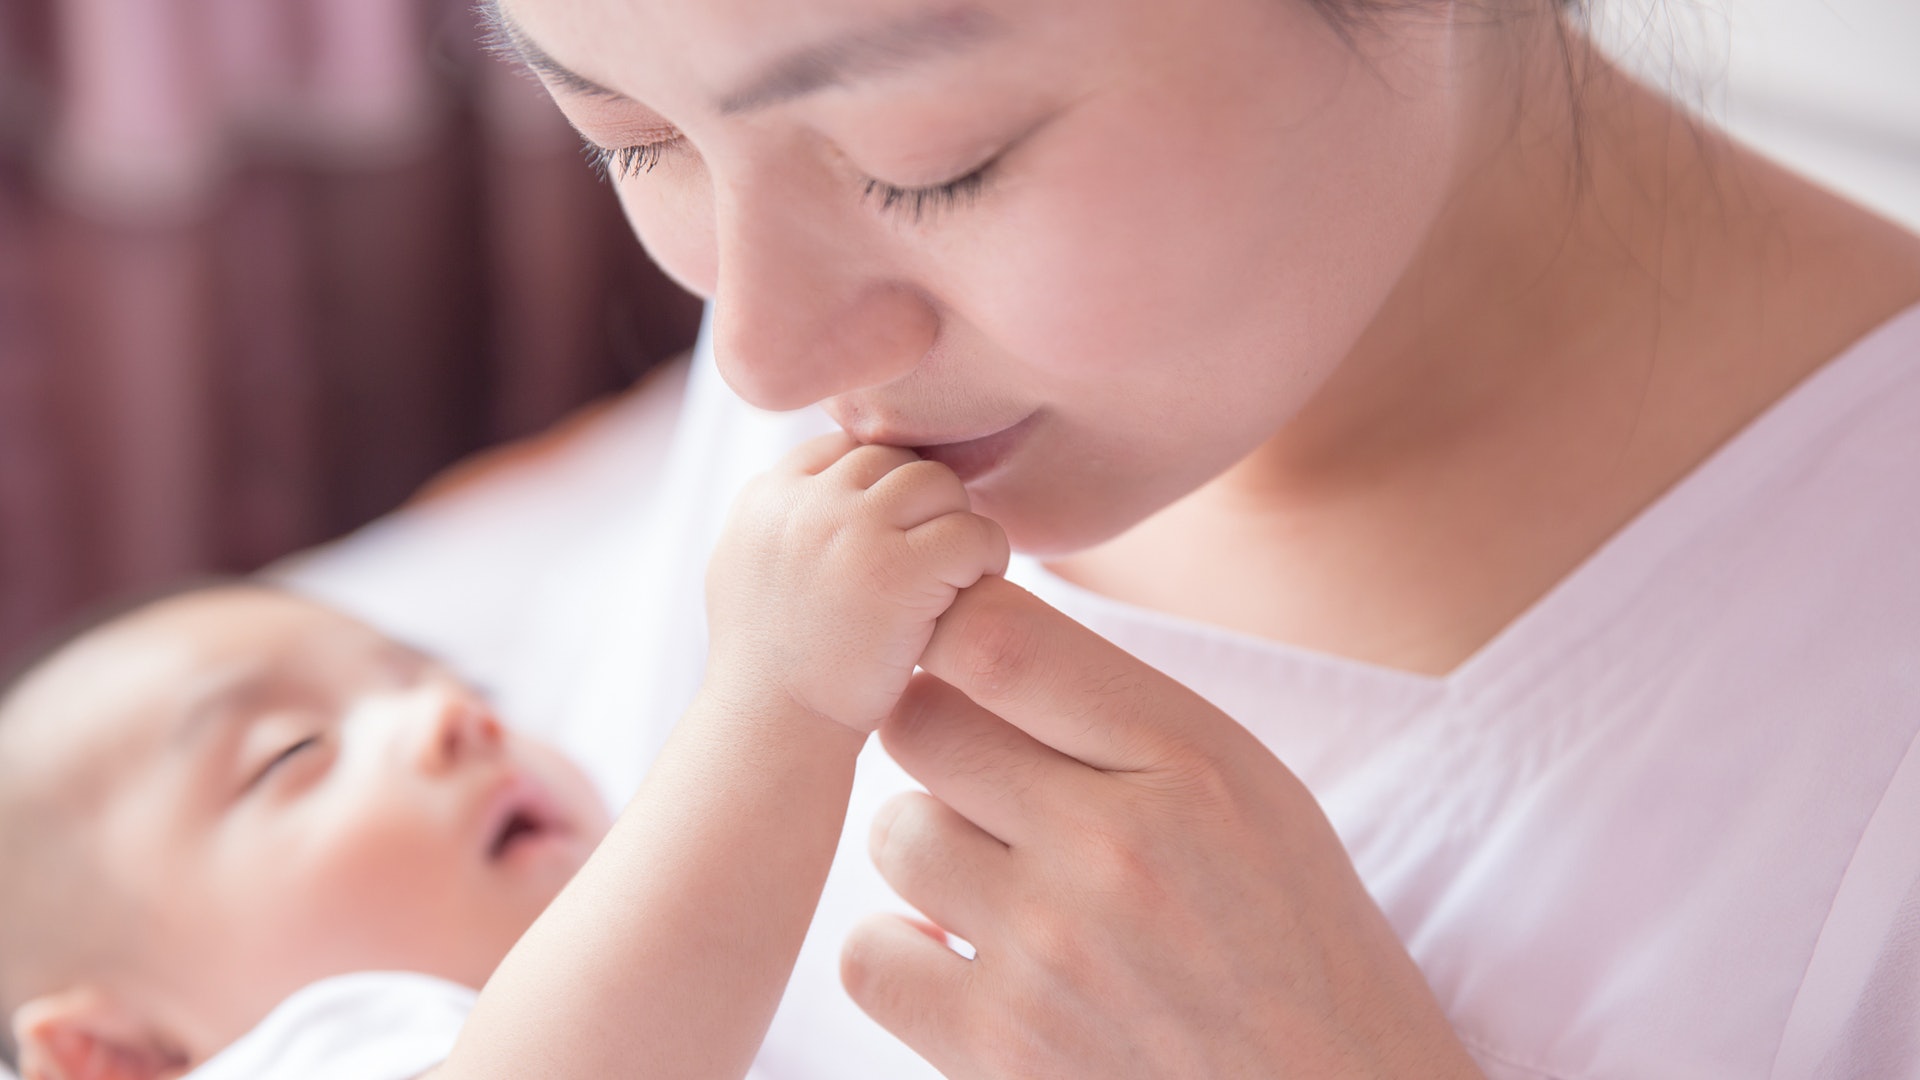 Bloccata la sperimentazione cinese sui neonati con Dna modificato